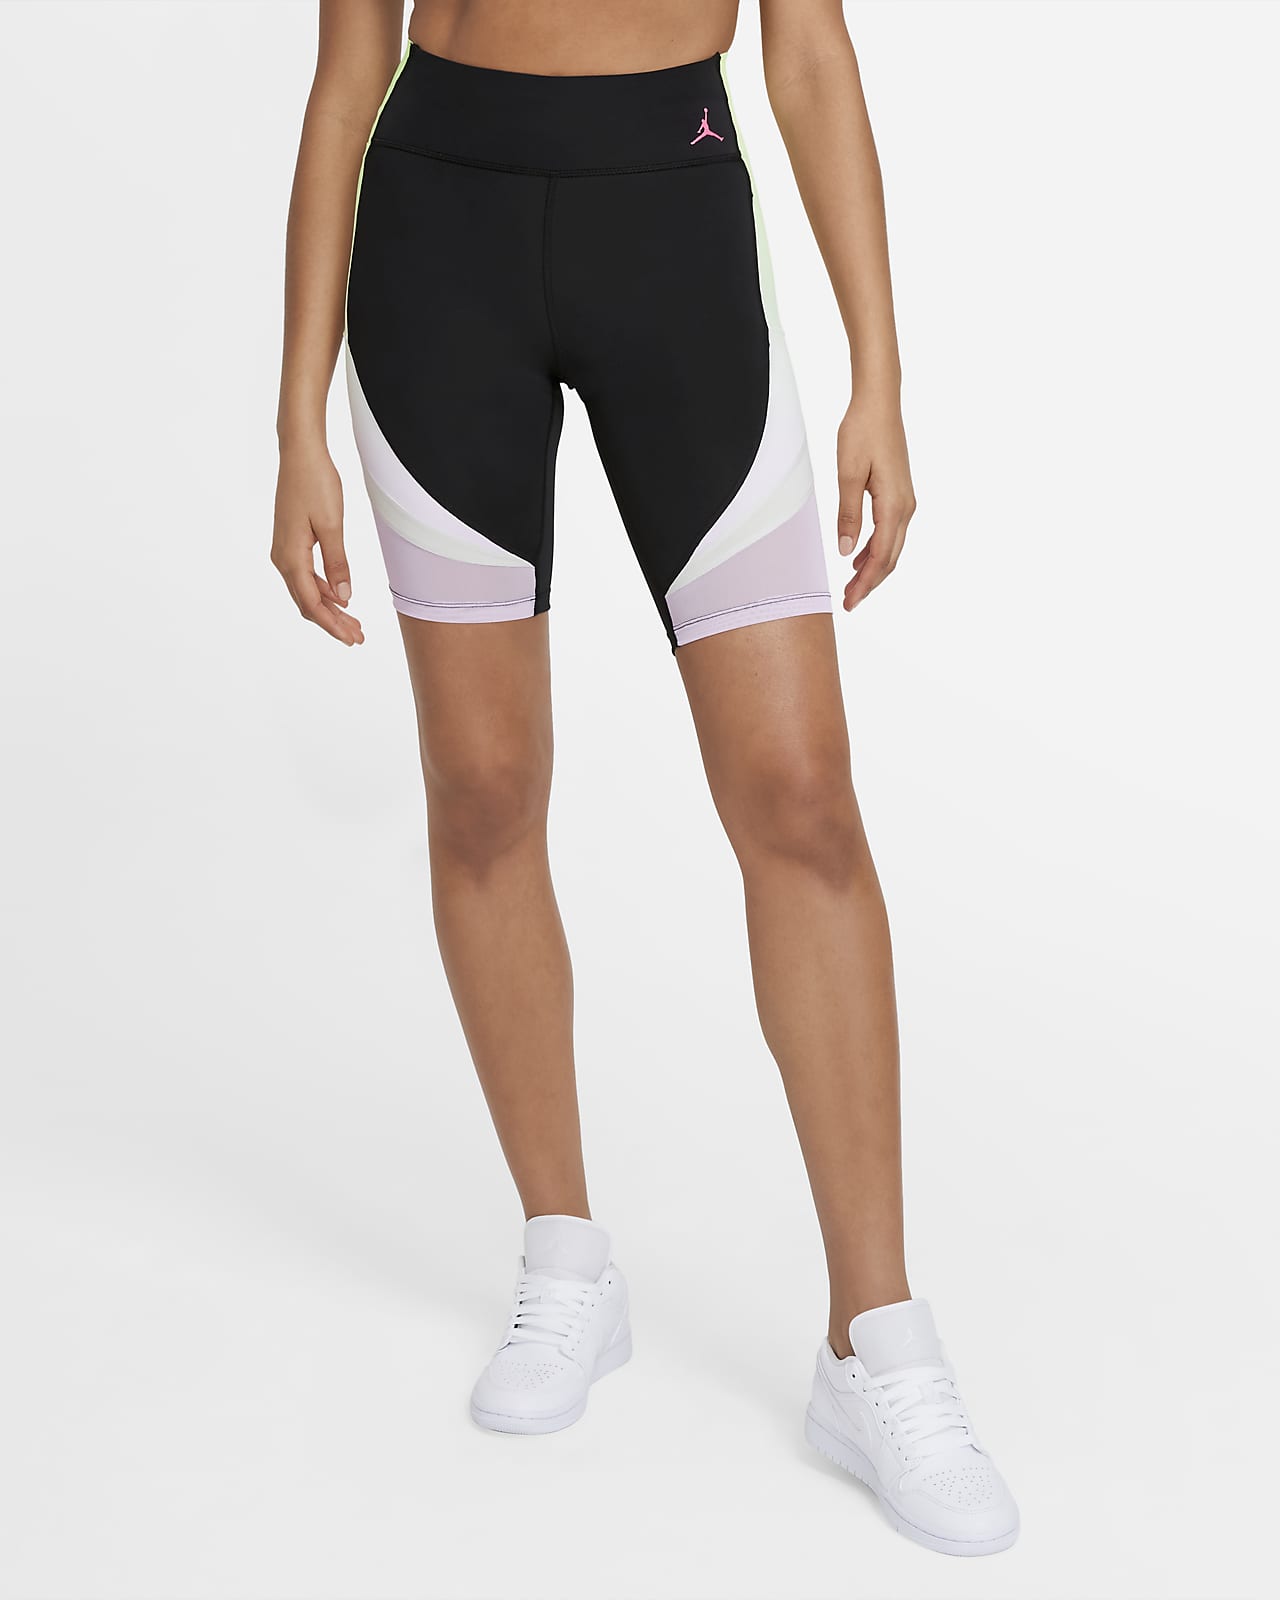 womens printed bike shorts